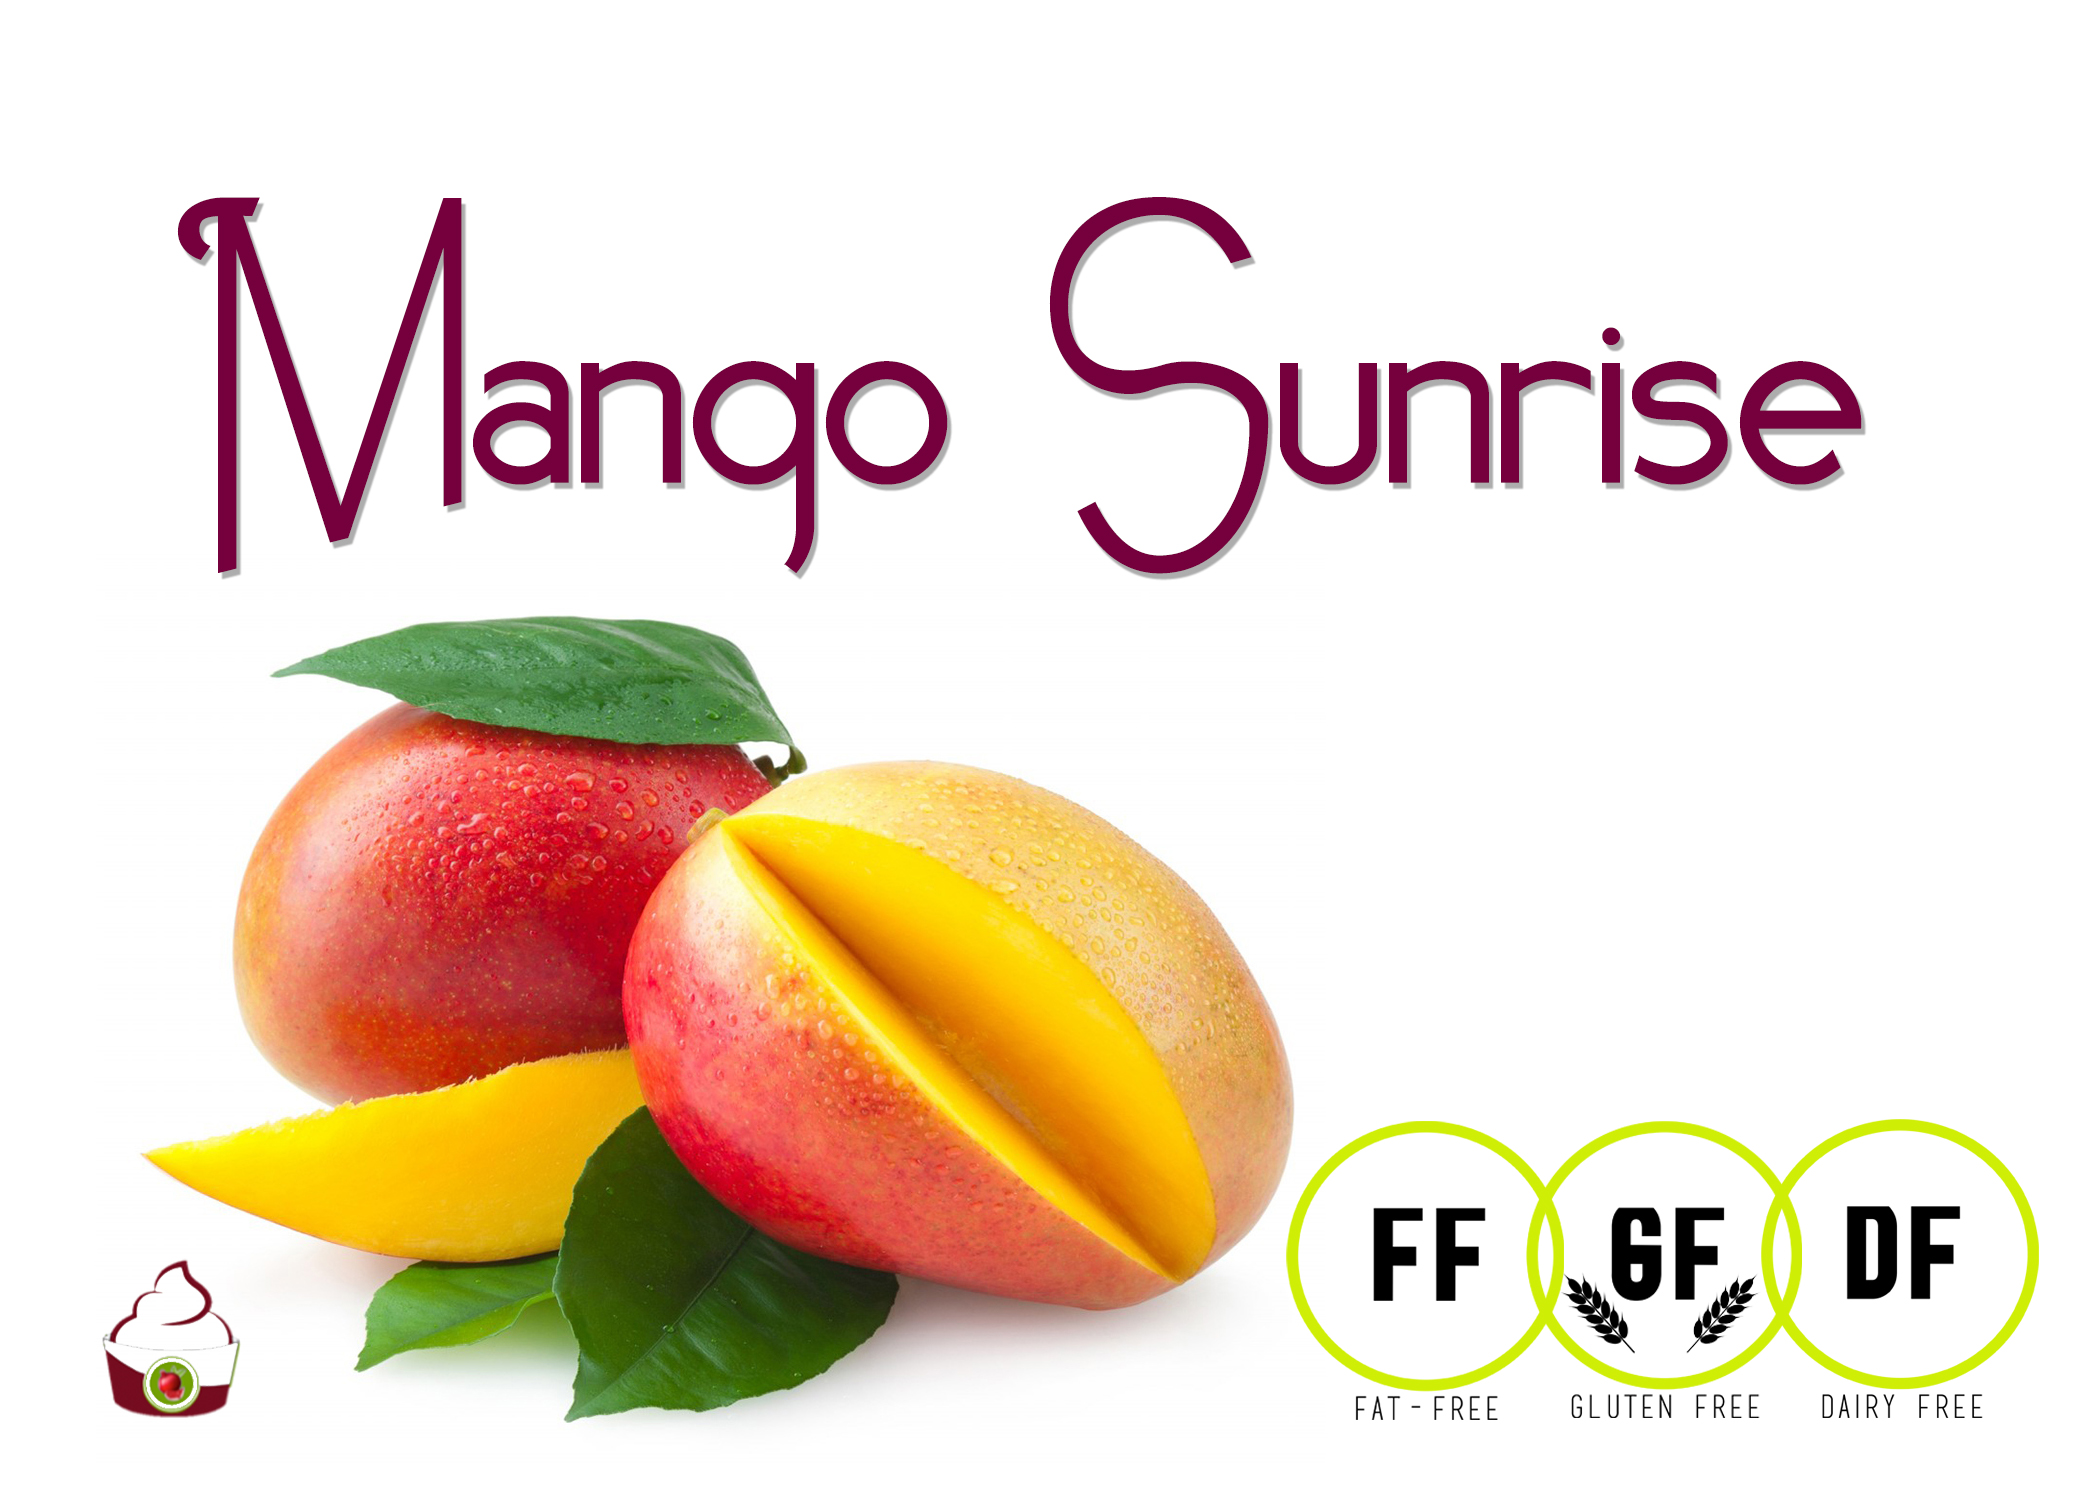 mango sunrise.jpg